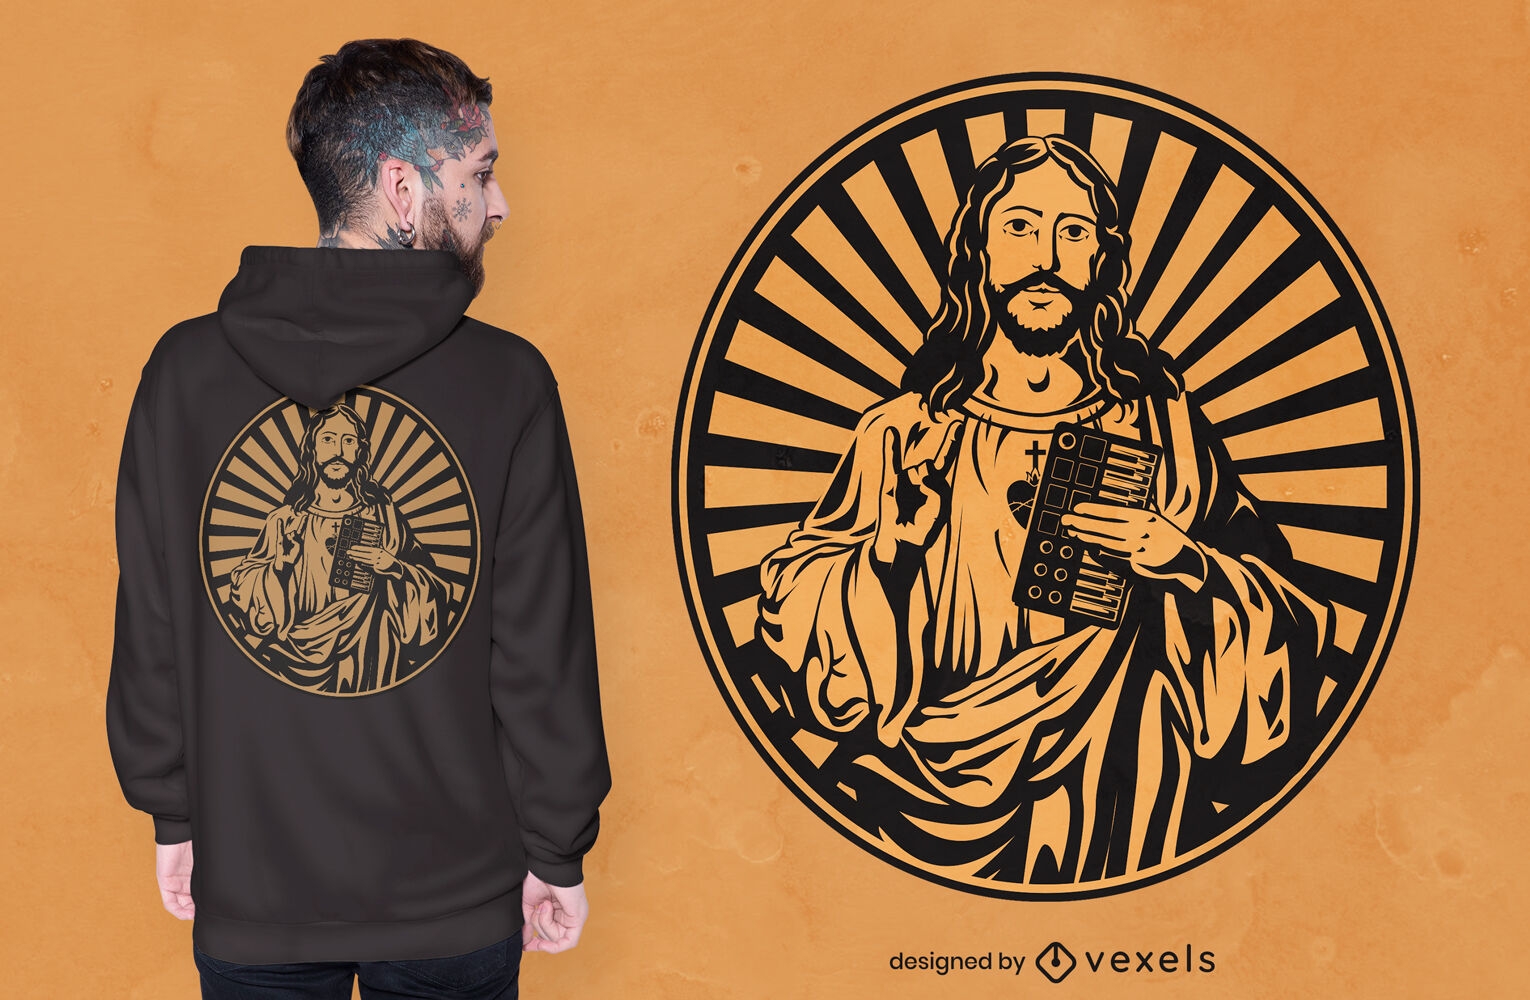 Jesus com design de camiseta com sintetizador